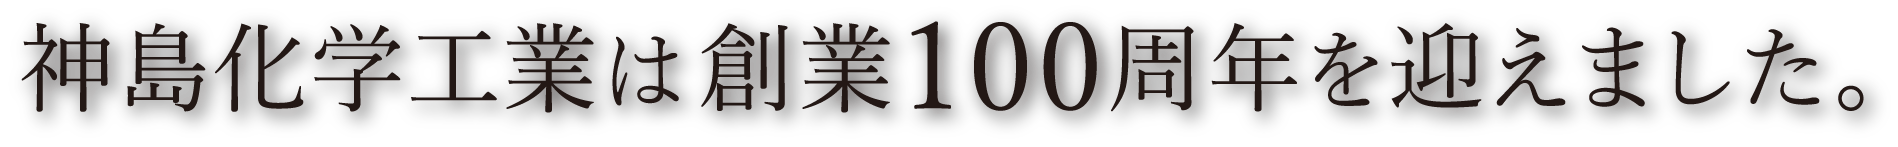 神島化学工業は2017年で創業100周年を迎えます。